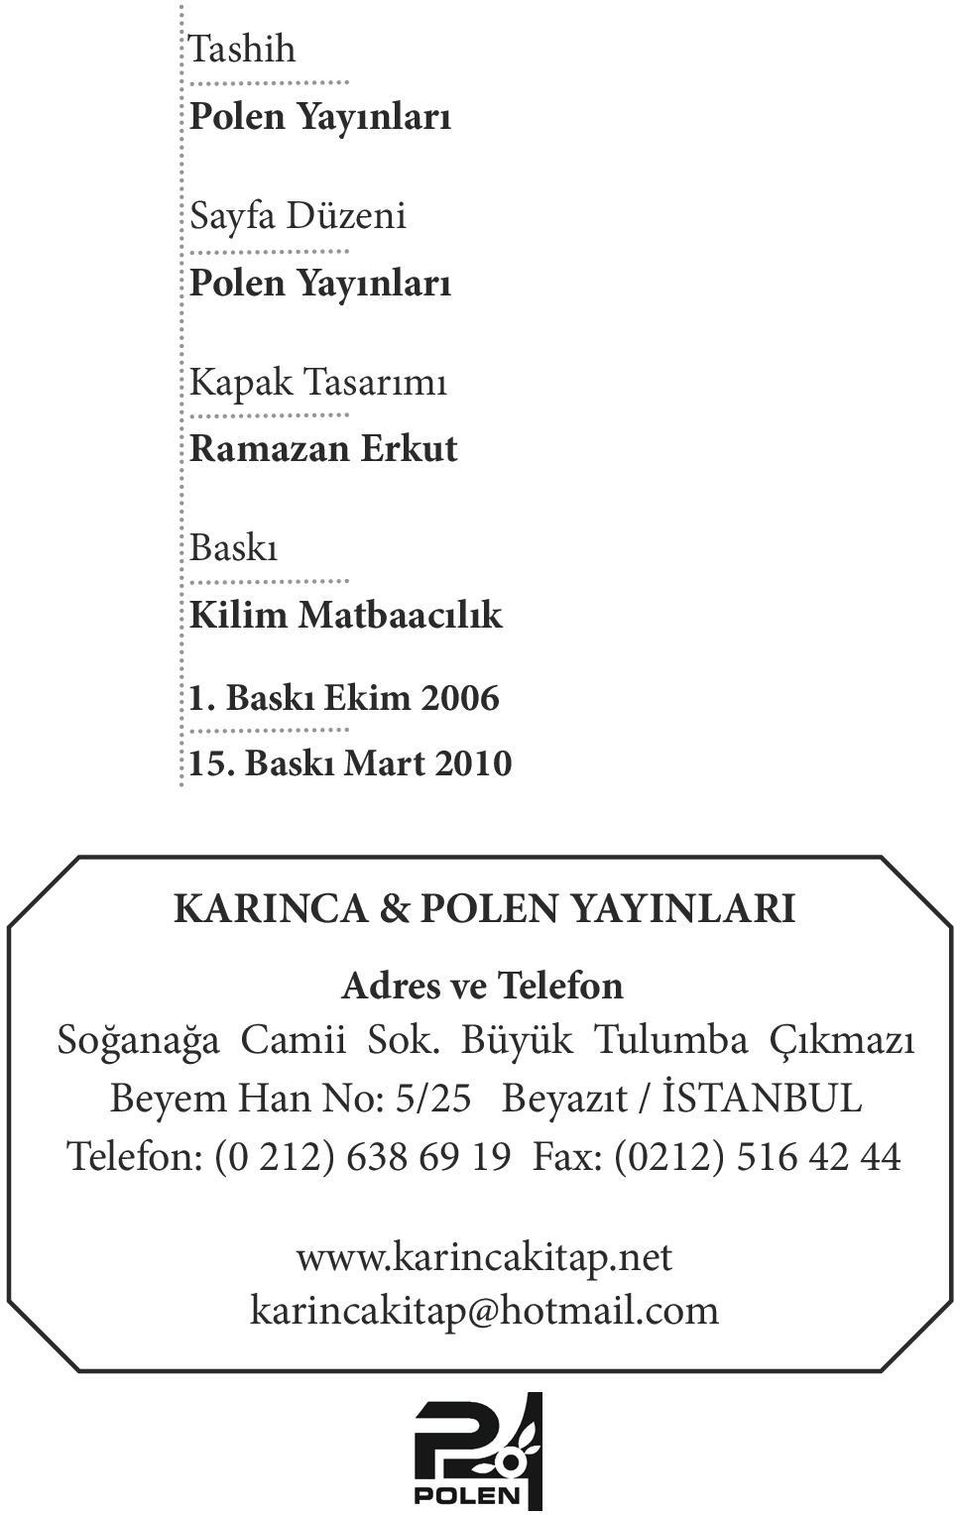 Baskı Mart 2010 KARINCA & POLEN YAYINLARI Adres ve Telefon Soğanağa Camii Sok.